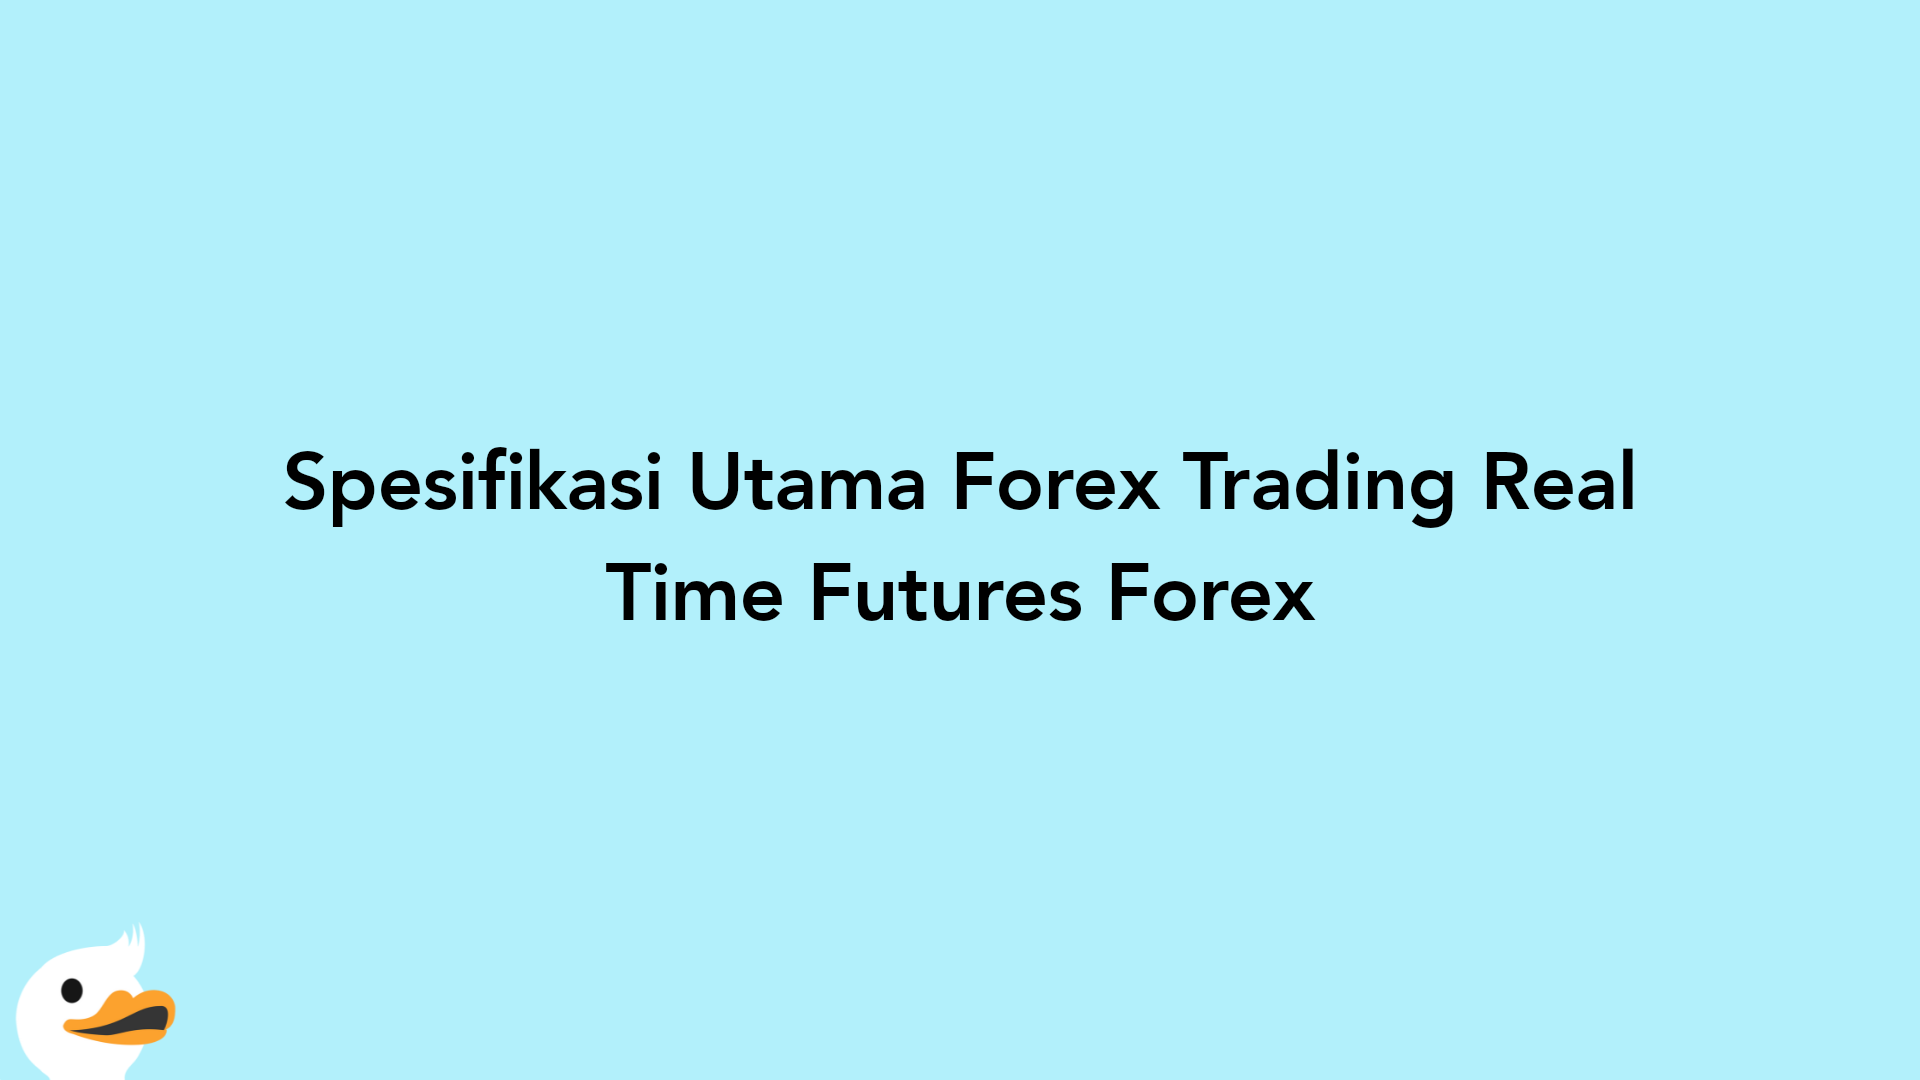 Spesifikasi Utama Forex Trading Real Time Futures Forex